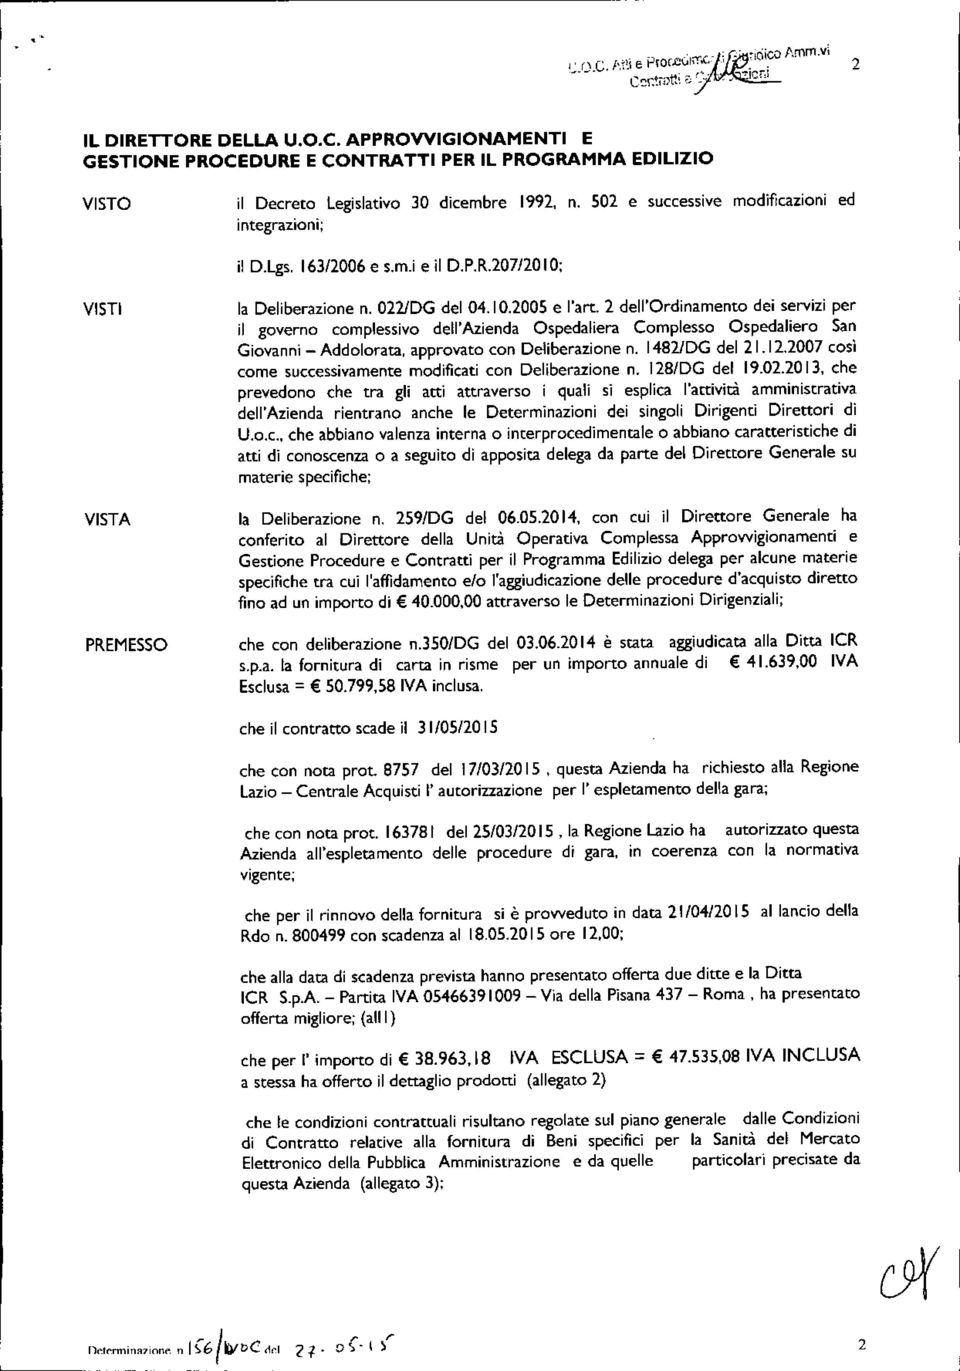 2 dell'ordinamento dei servizi per il governo complessivo dell'azienda Ospedaliera Complesso Ospedaliero San Giovanni - Addolorata approvato con Deliberazione n. I4821DG del 21.12.